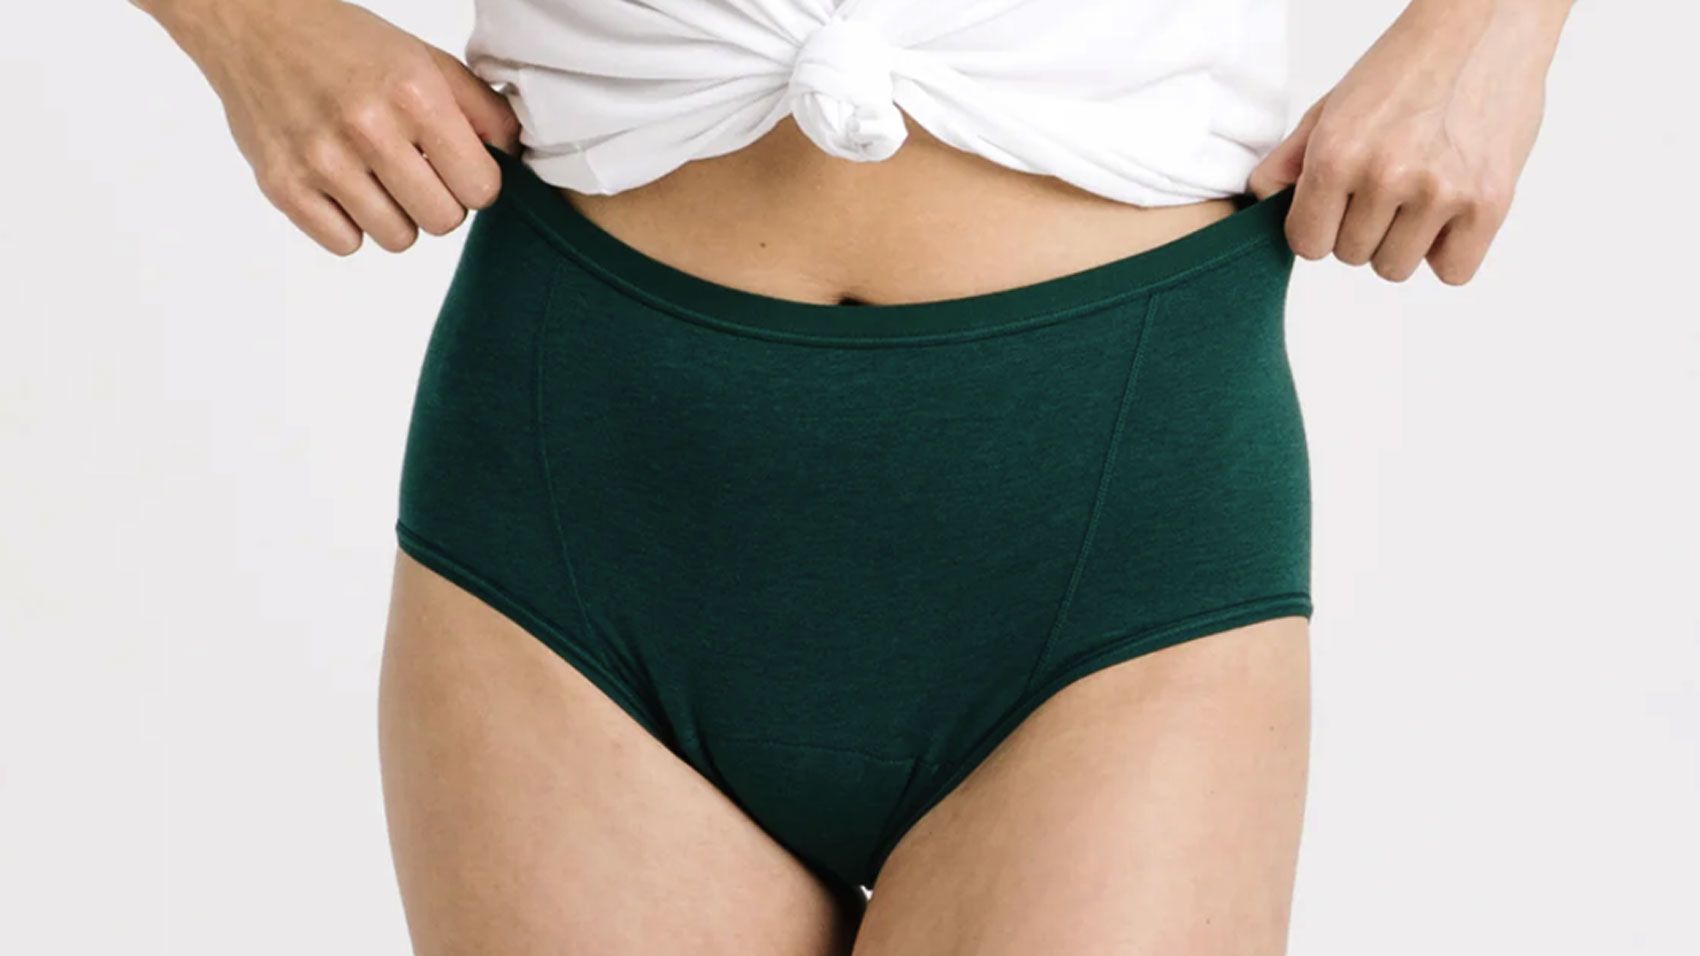 Aisle Leakproof Period Underwear - Bikini Style